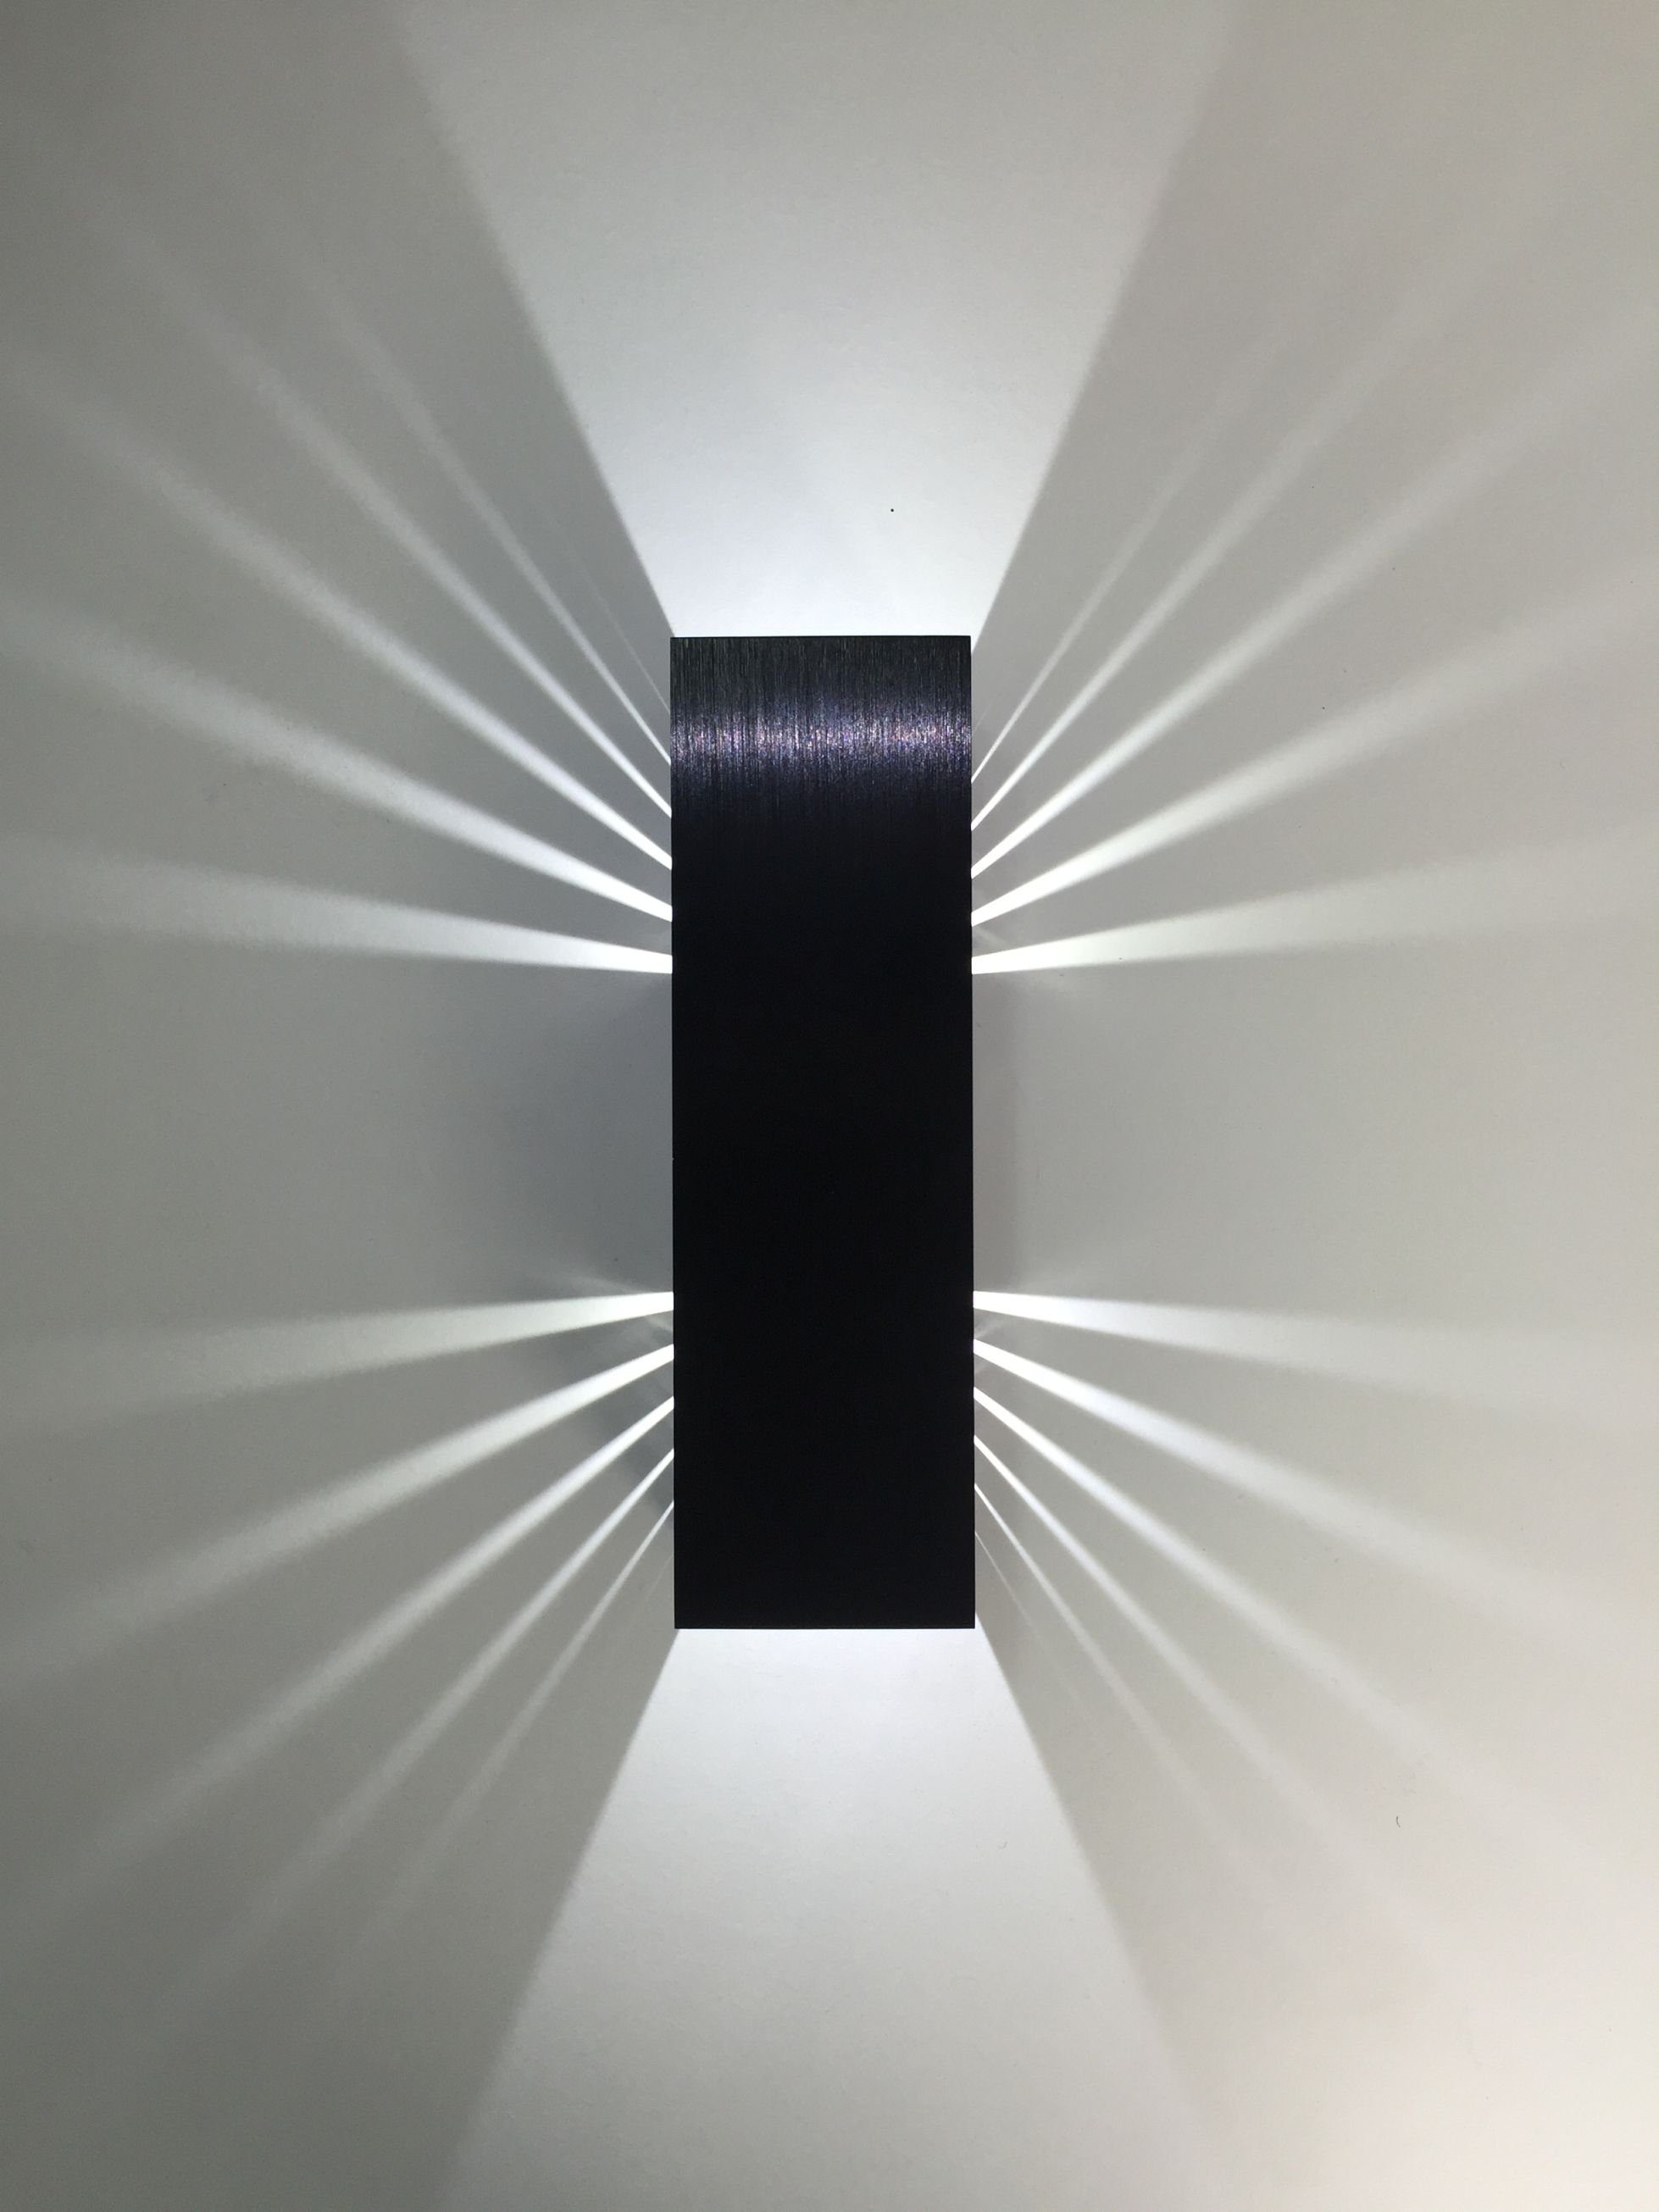 SpiceLED LED Wandleuchte Black Edition, Weiß (4200 K), LED fest integriert, Warmweiß, 6 Watt, Lichtfarbe warmweiß, dimmbar, indirekte Beleuchtung mit Schatteneffekt, Up & Down Licht